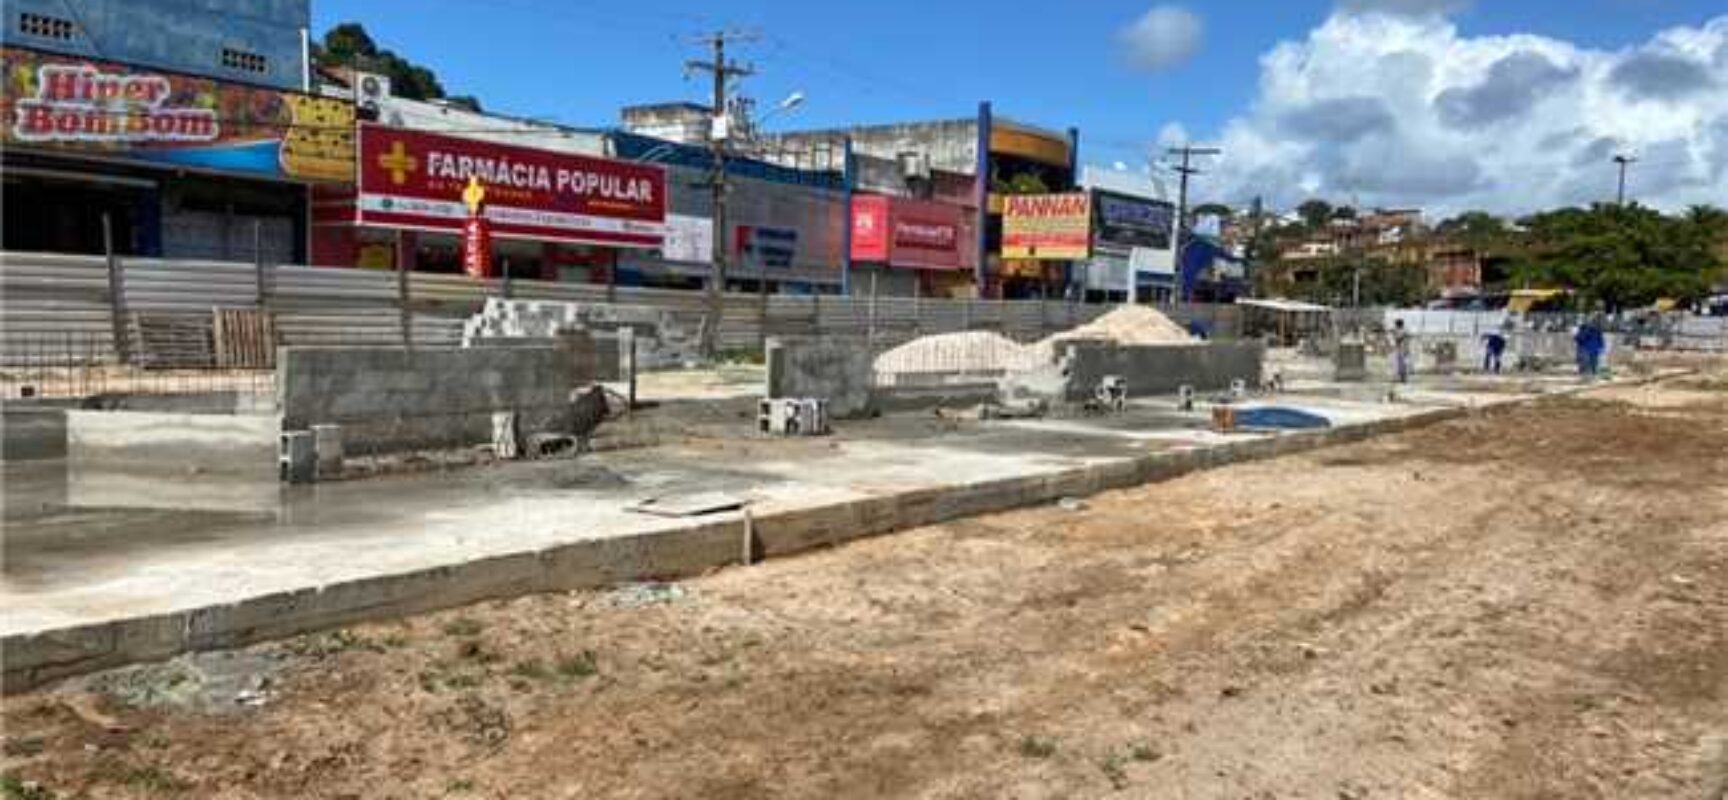 Ilhéus: Prefeitura faz balanço positivo de obras no município